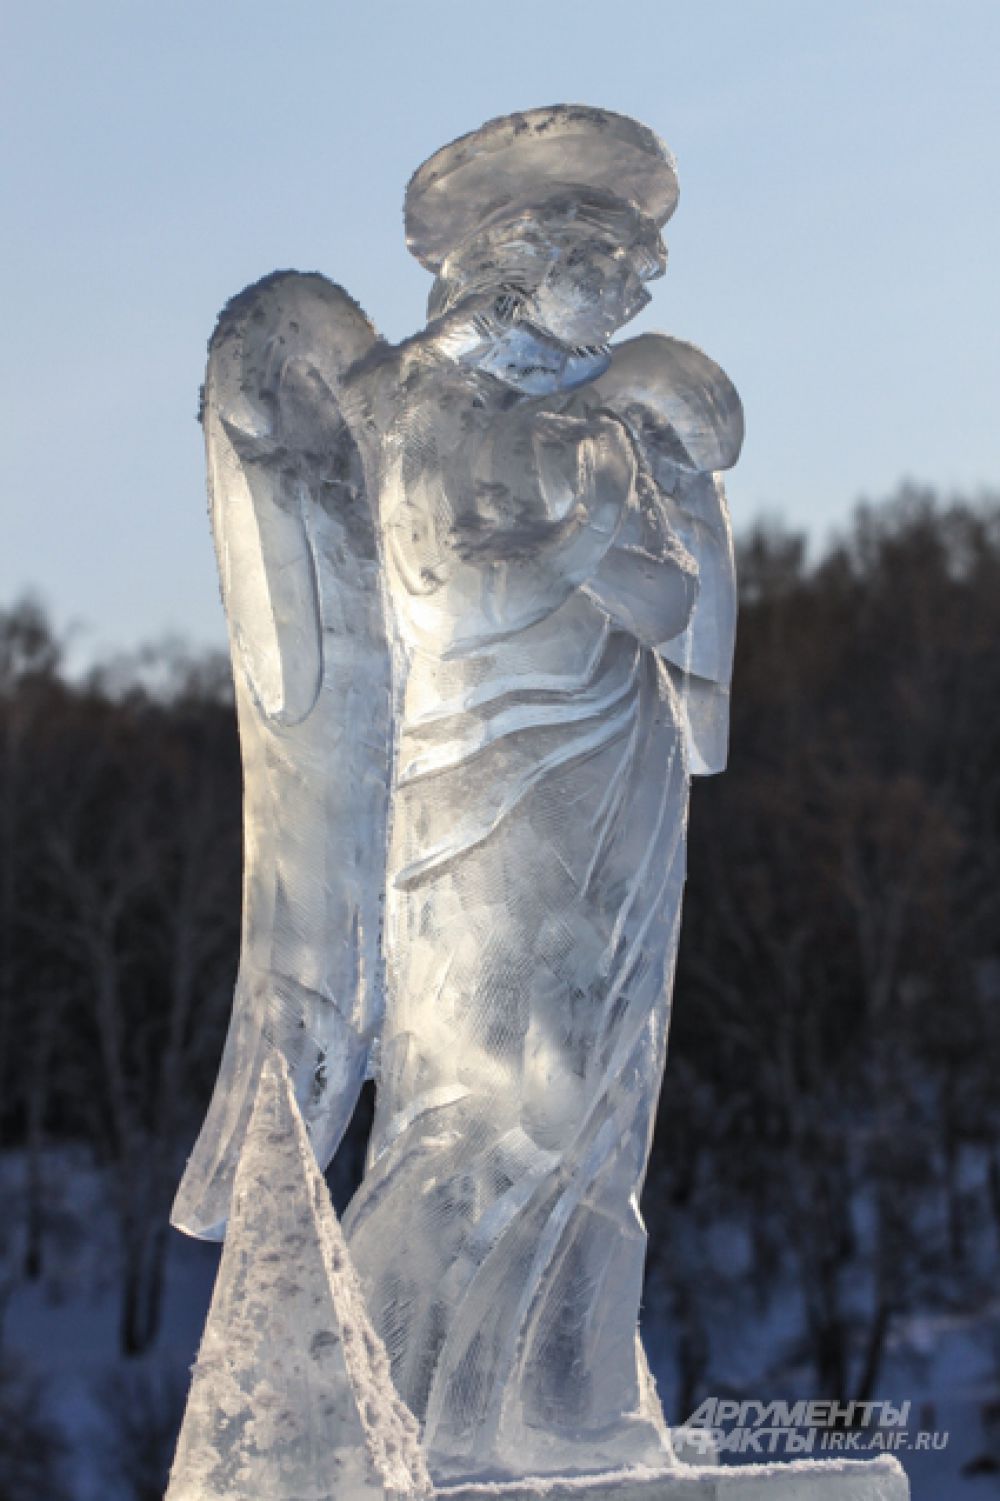 Традиционно иордань украшают скульптуры ангелов.